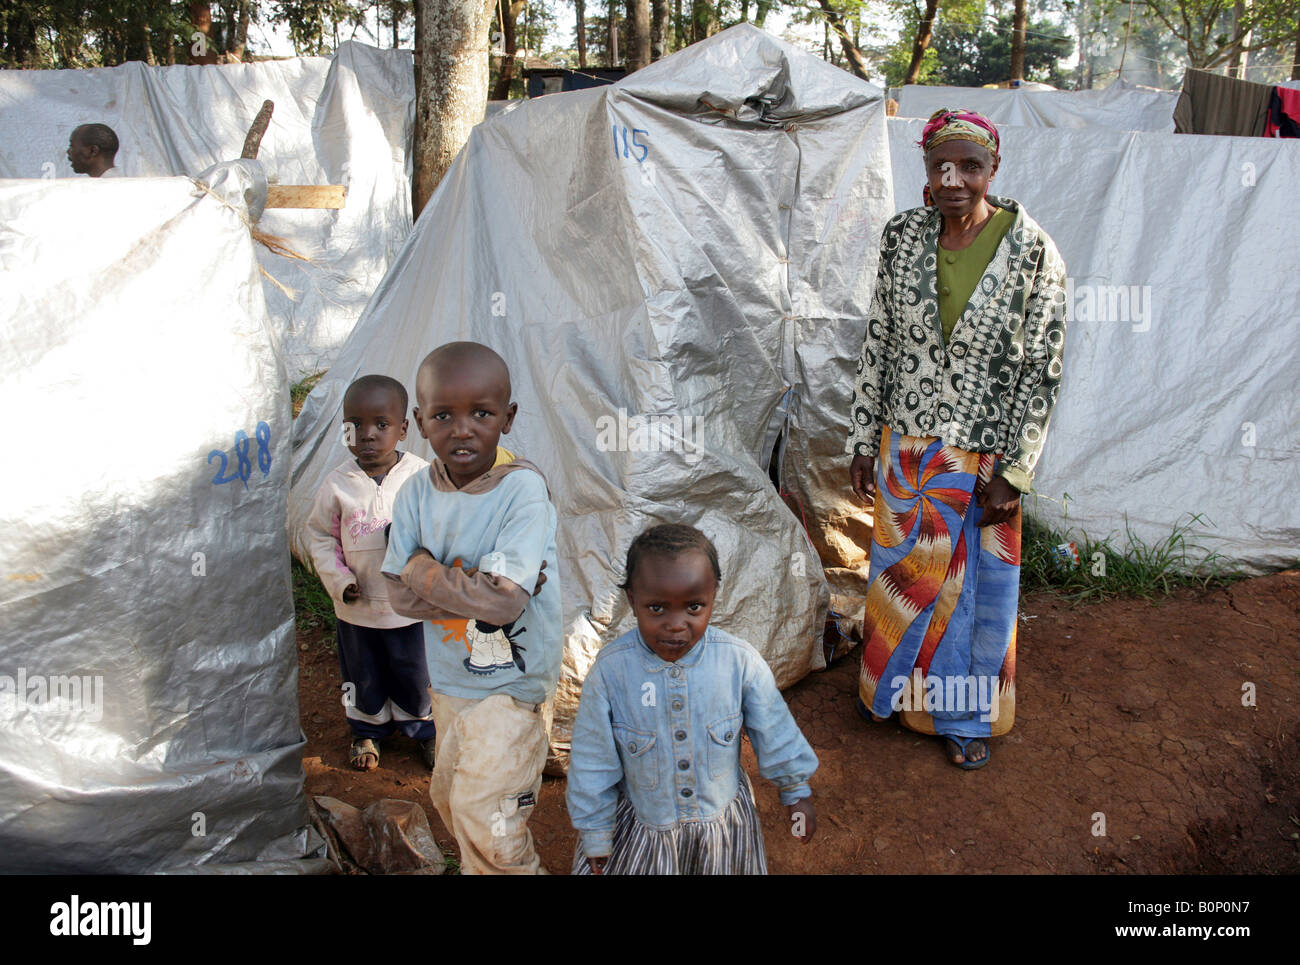 Kenyan refugees (internally displaced people = IDPs) at the refugee camp Riruta in Nairobi Stock Photo